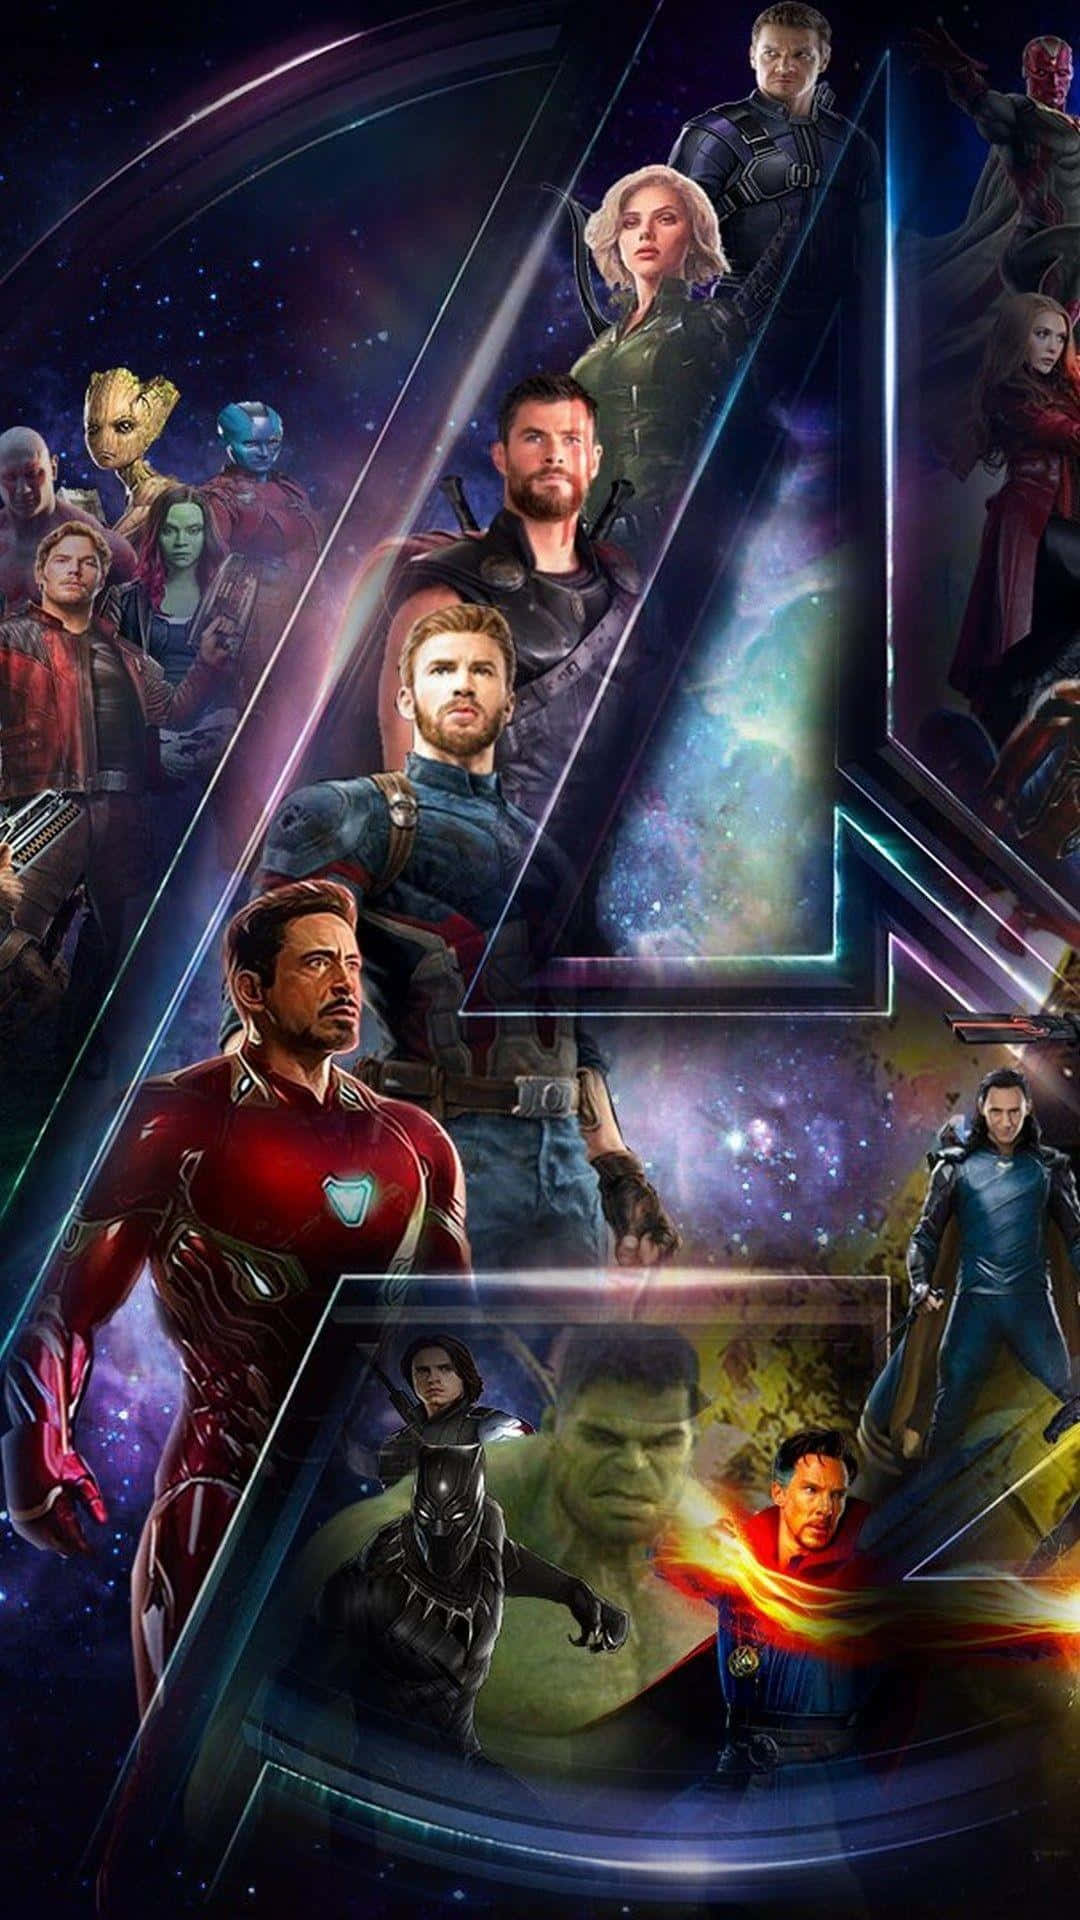 Soddisfala Tua Voglia Di Supereroi Con Avengers: Endgame Sul Tuo Iphone! Sfondo